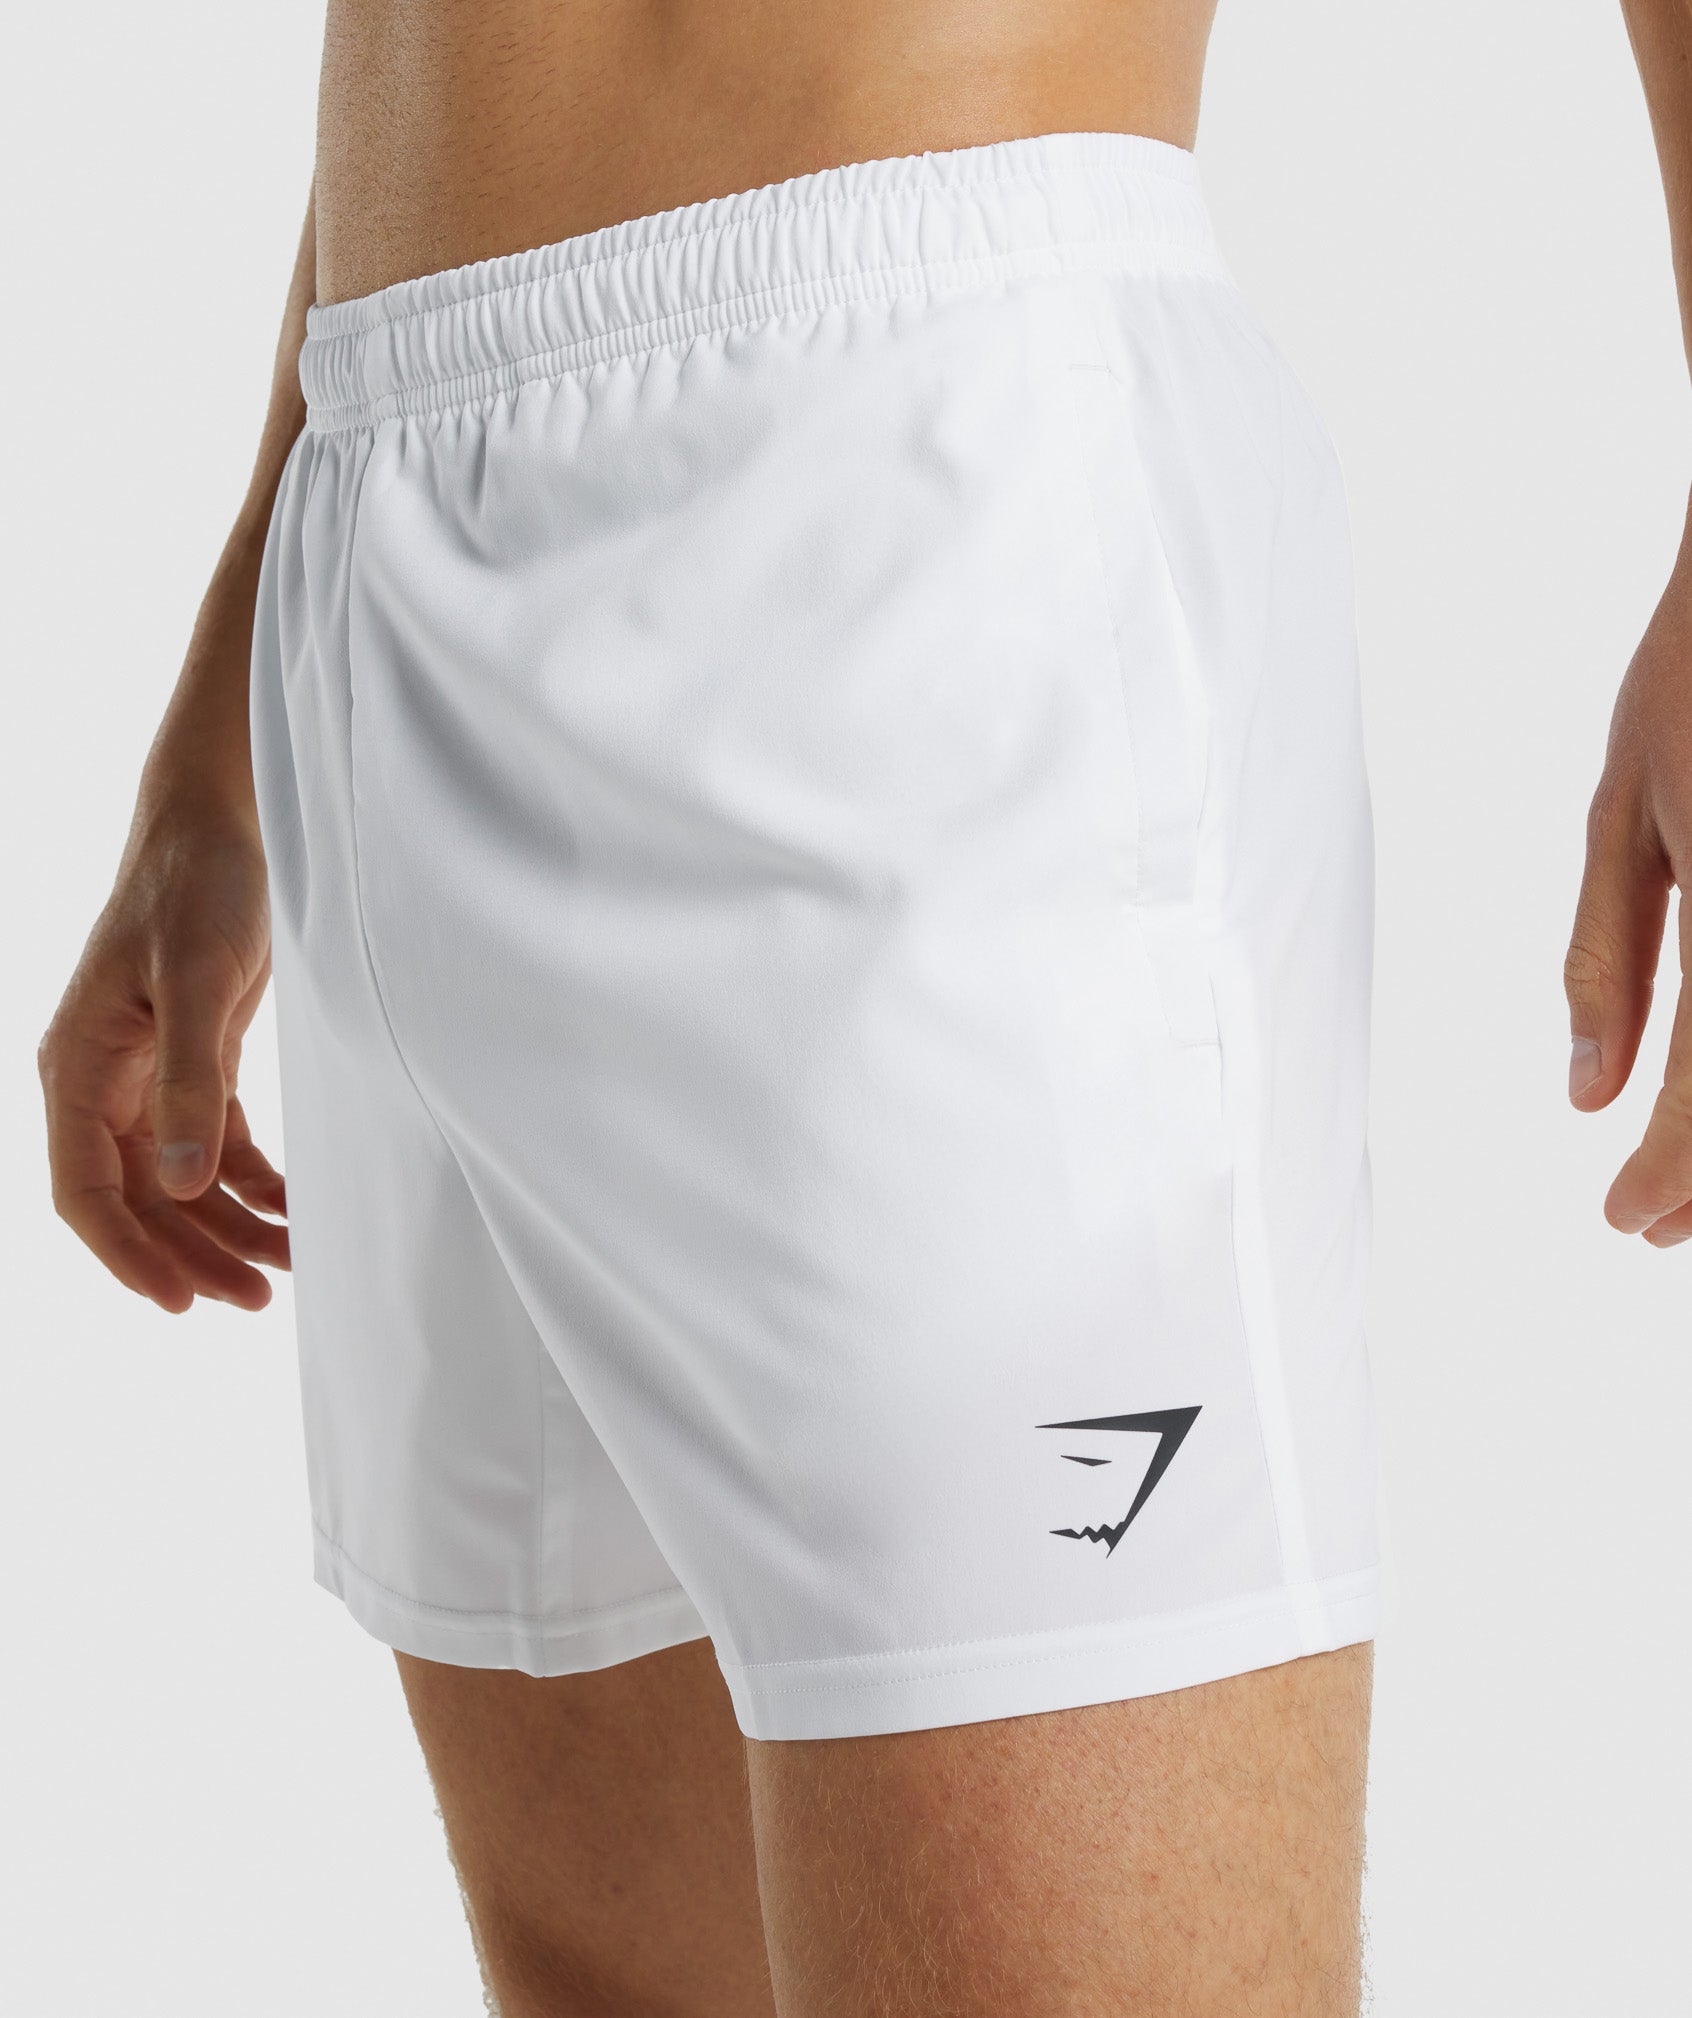 Gymshark Arrival 5 Shorts - White